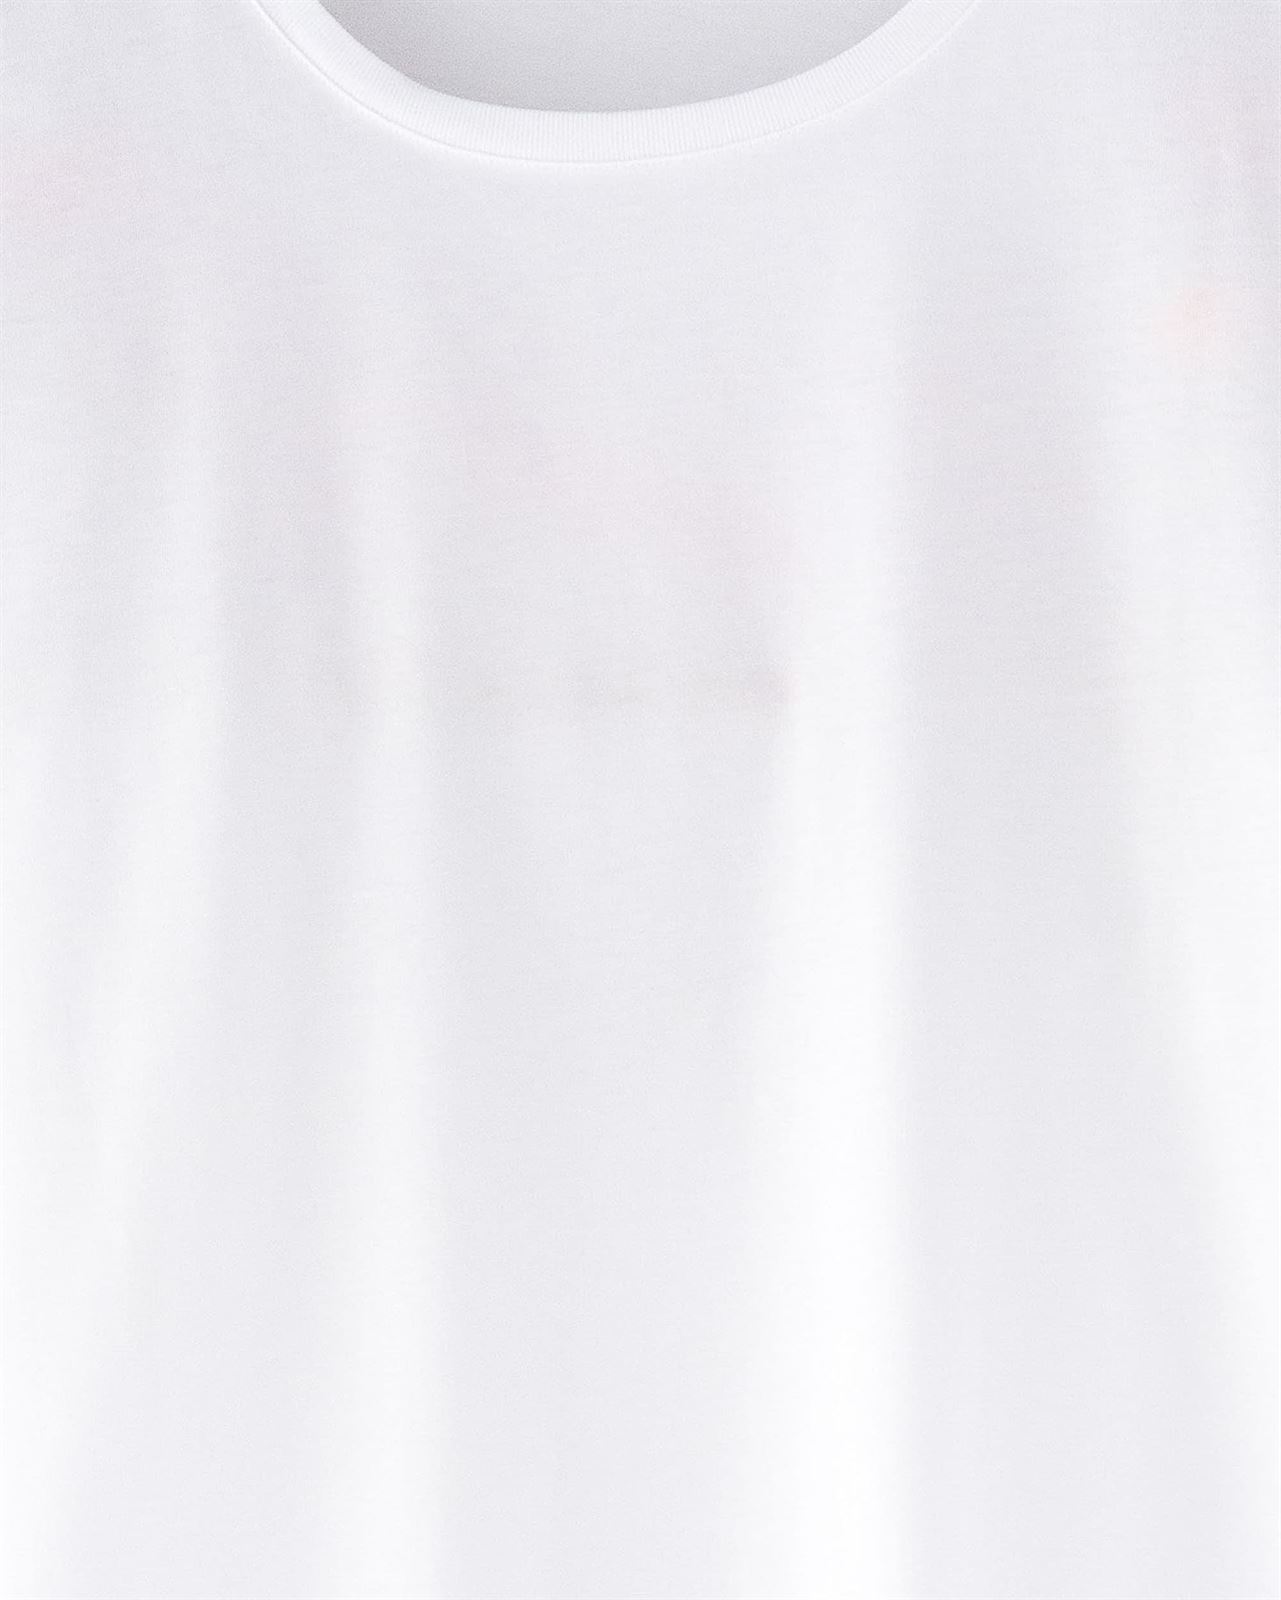 Camiseta Blanca - Imagen 2